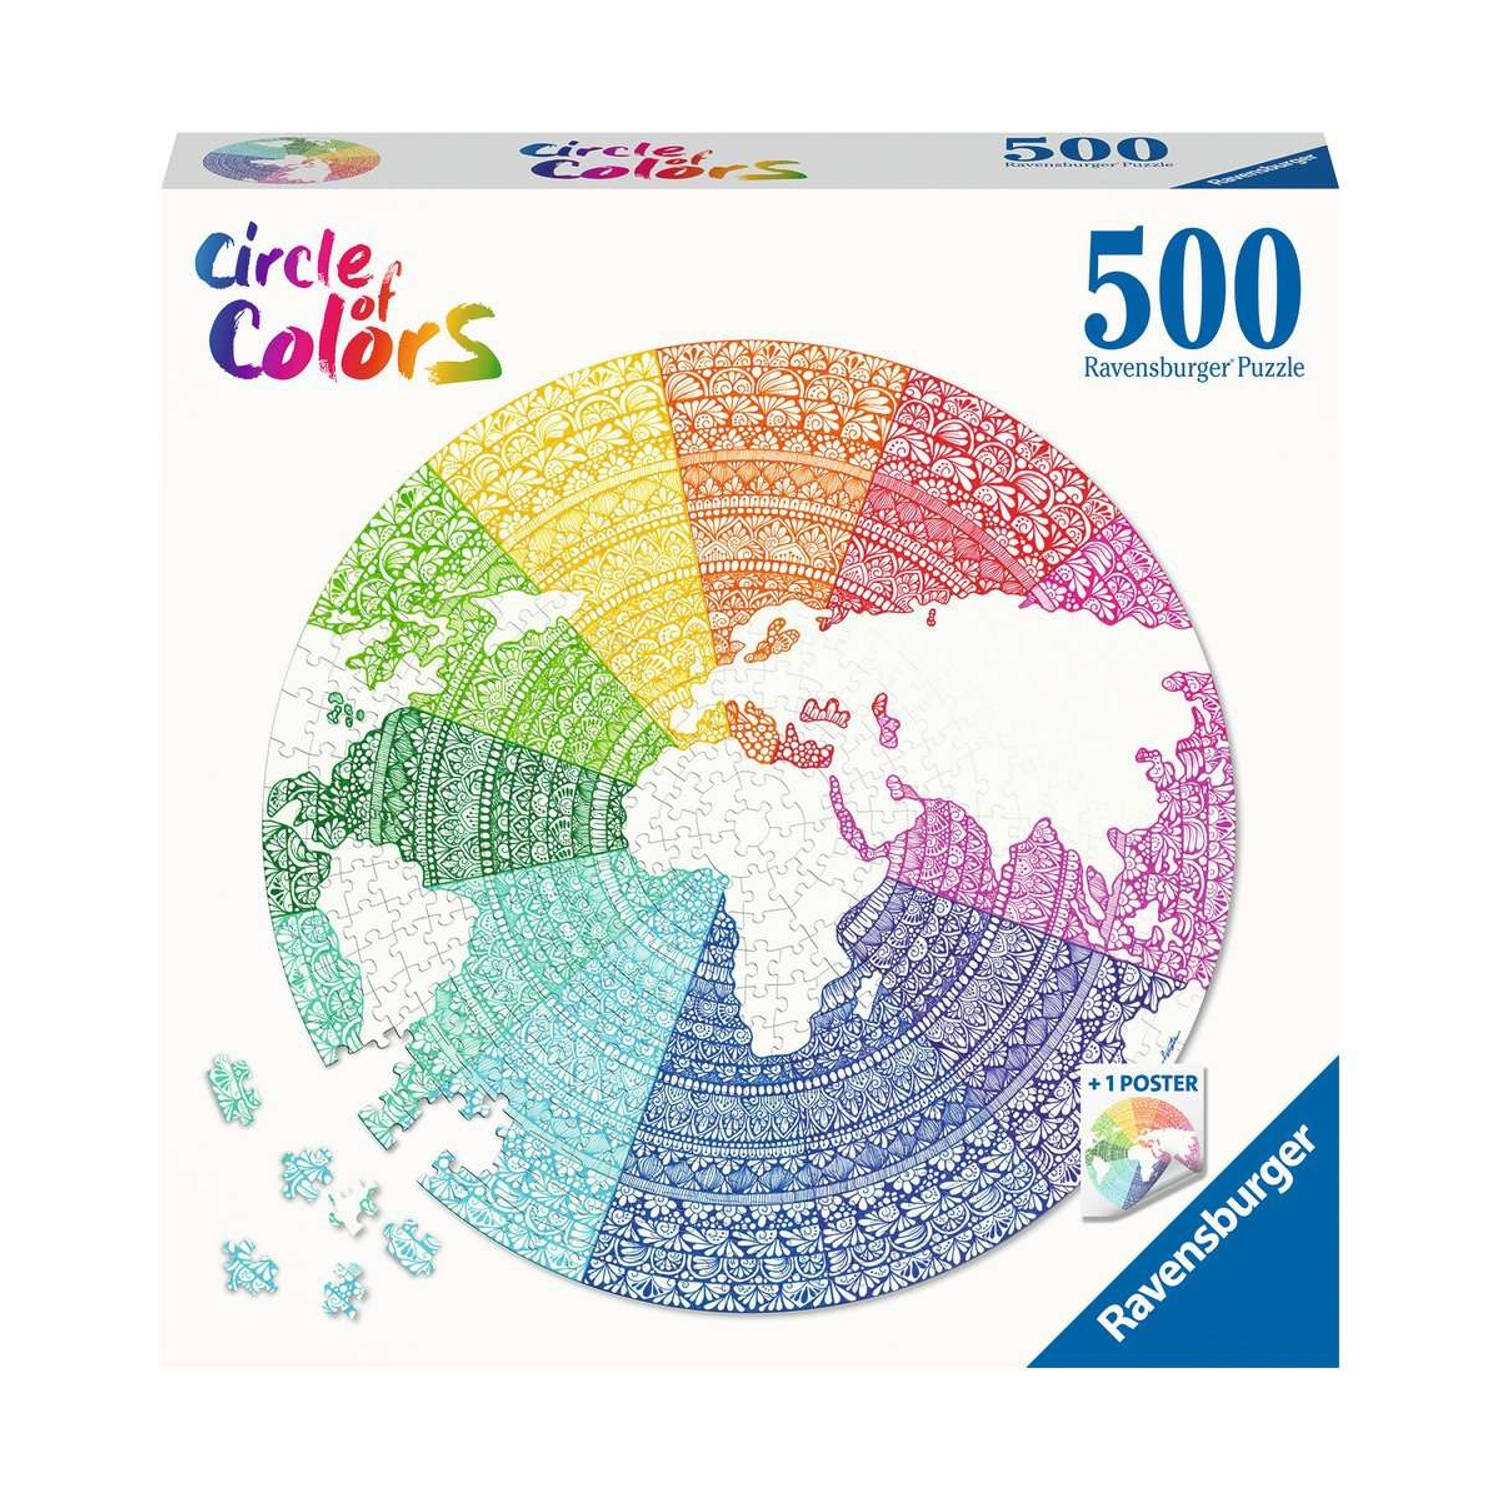 Ravensburger puzzel circle of colors-mandala 500 stukjes